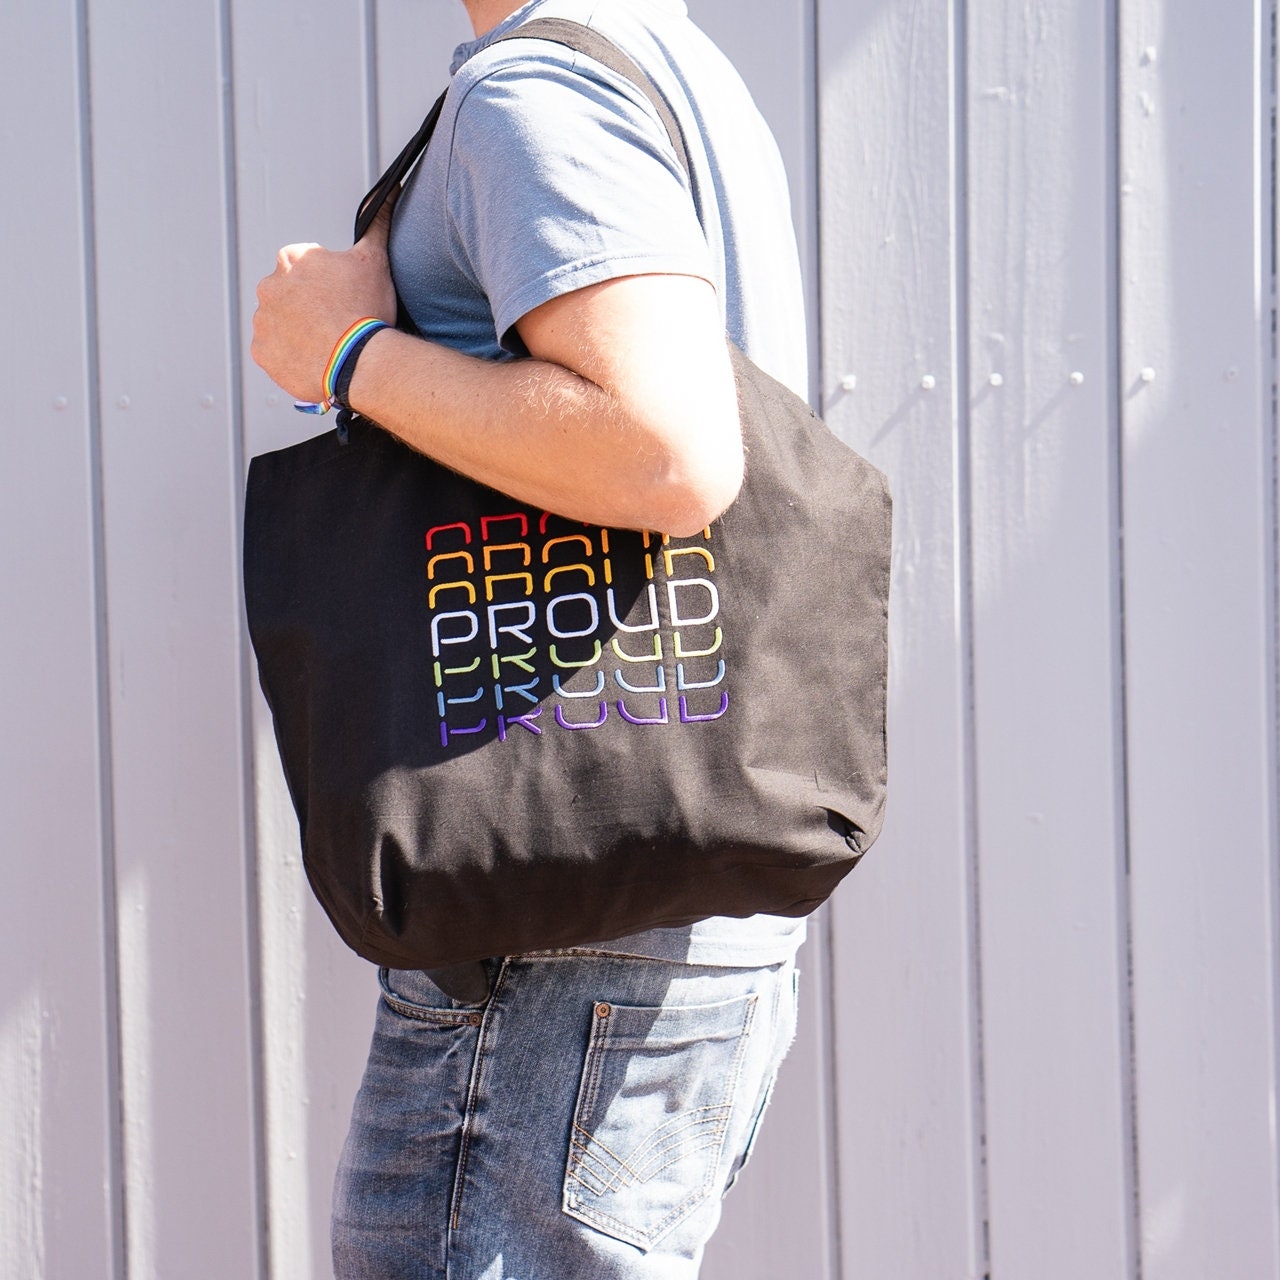 LGBTQ LGBT Rainbow Bucket Bag Bag With Bottom Embroidered 